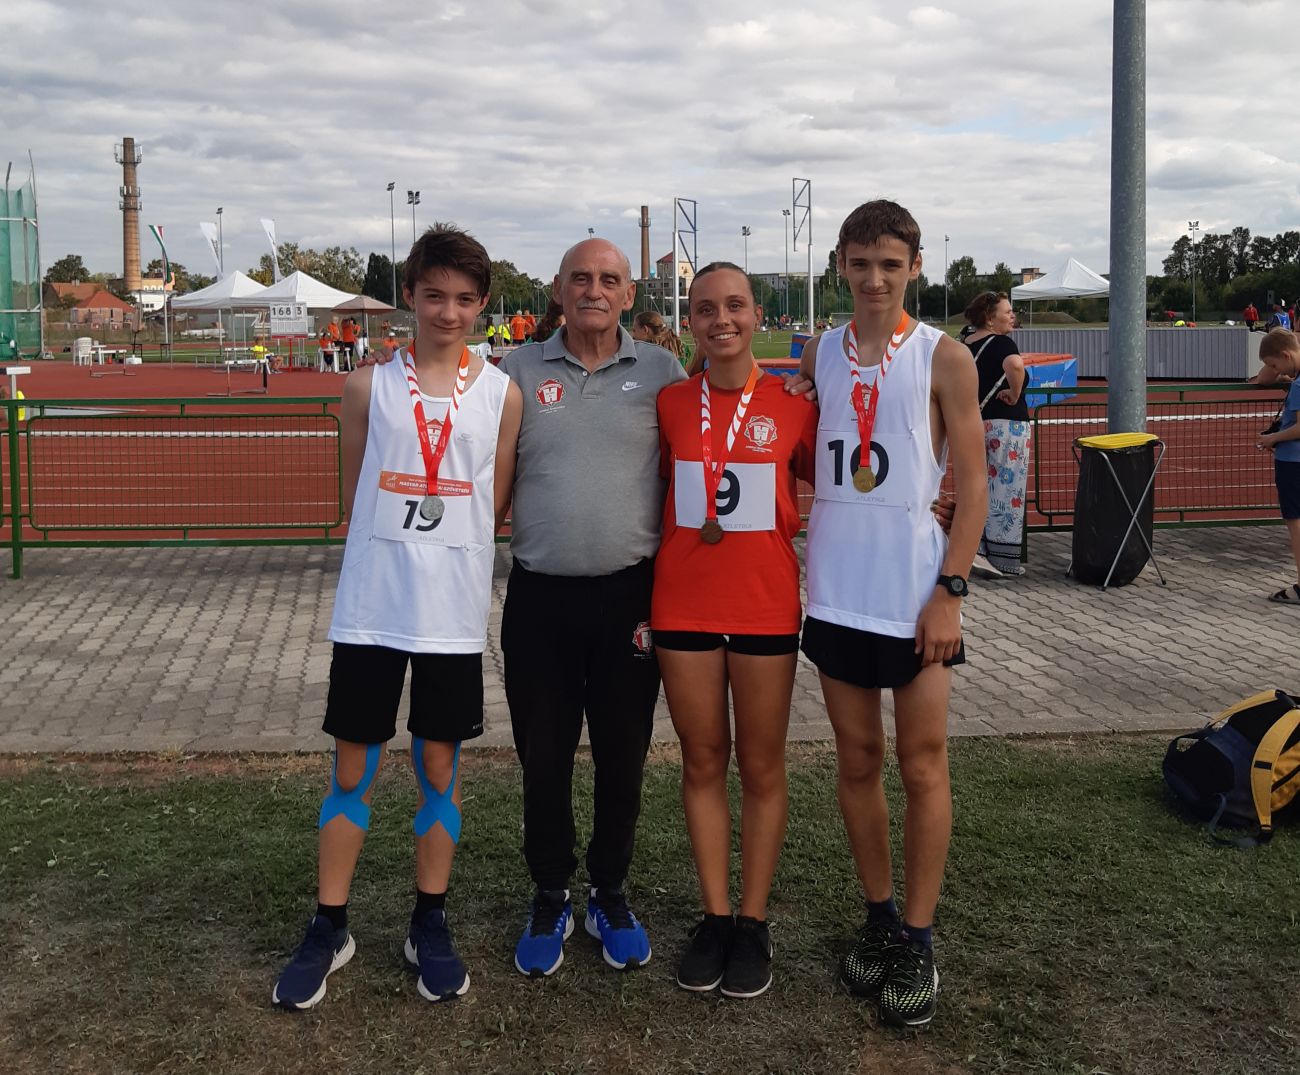 Ifjú fehérvári gyaloglók a bajnoki dobogón a korosztályos bajnokságon